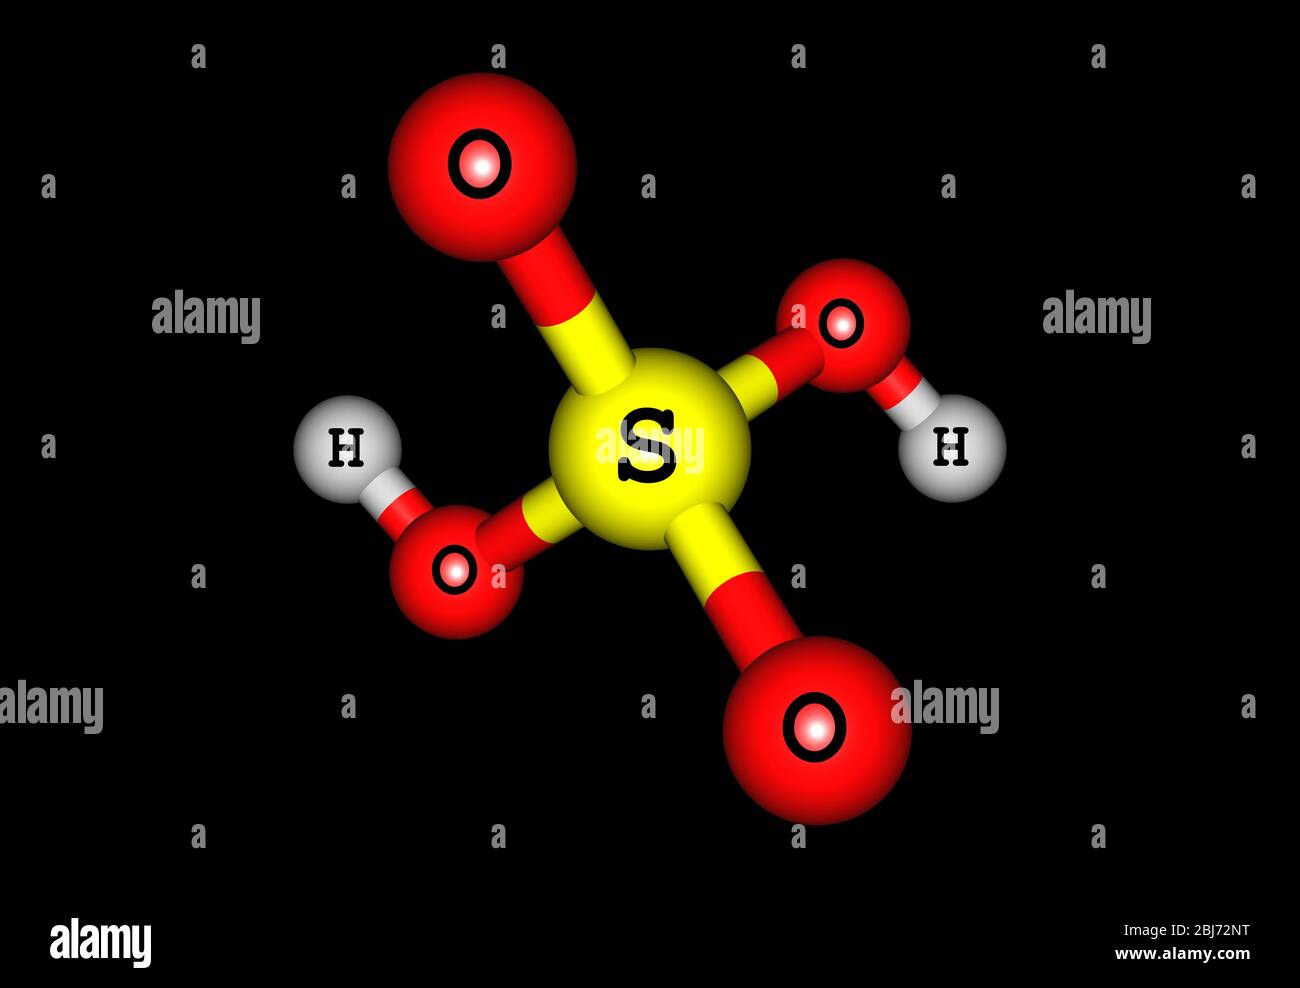 L'acido solforico (acido solforico) è un acido minerale forte